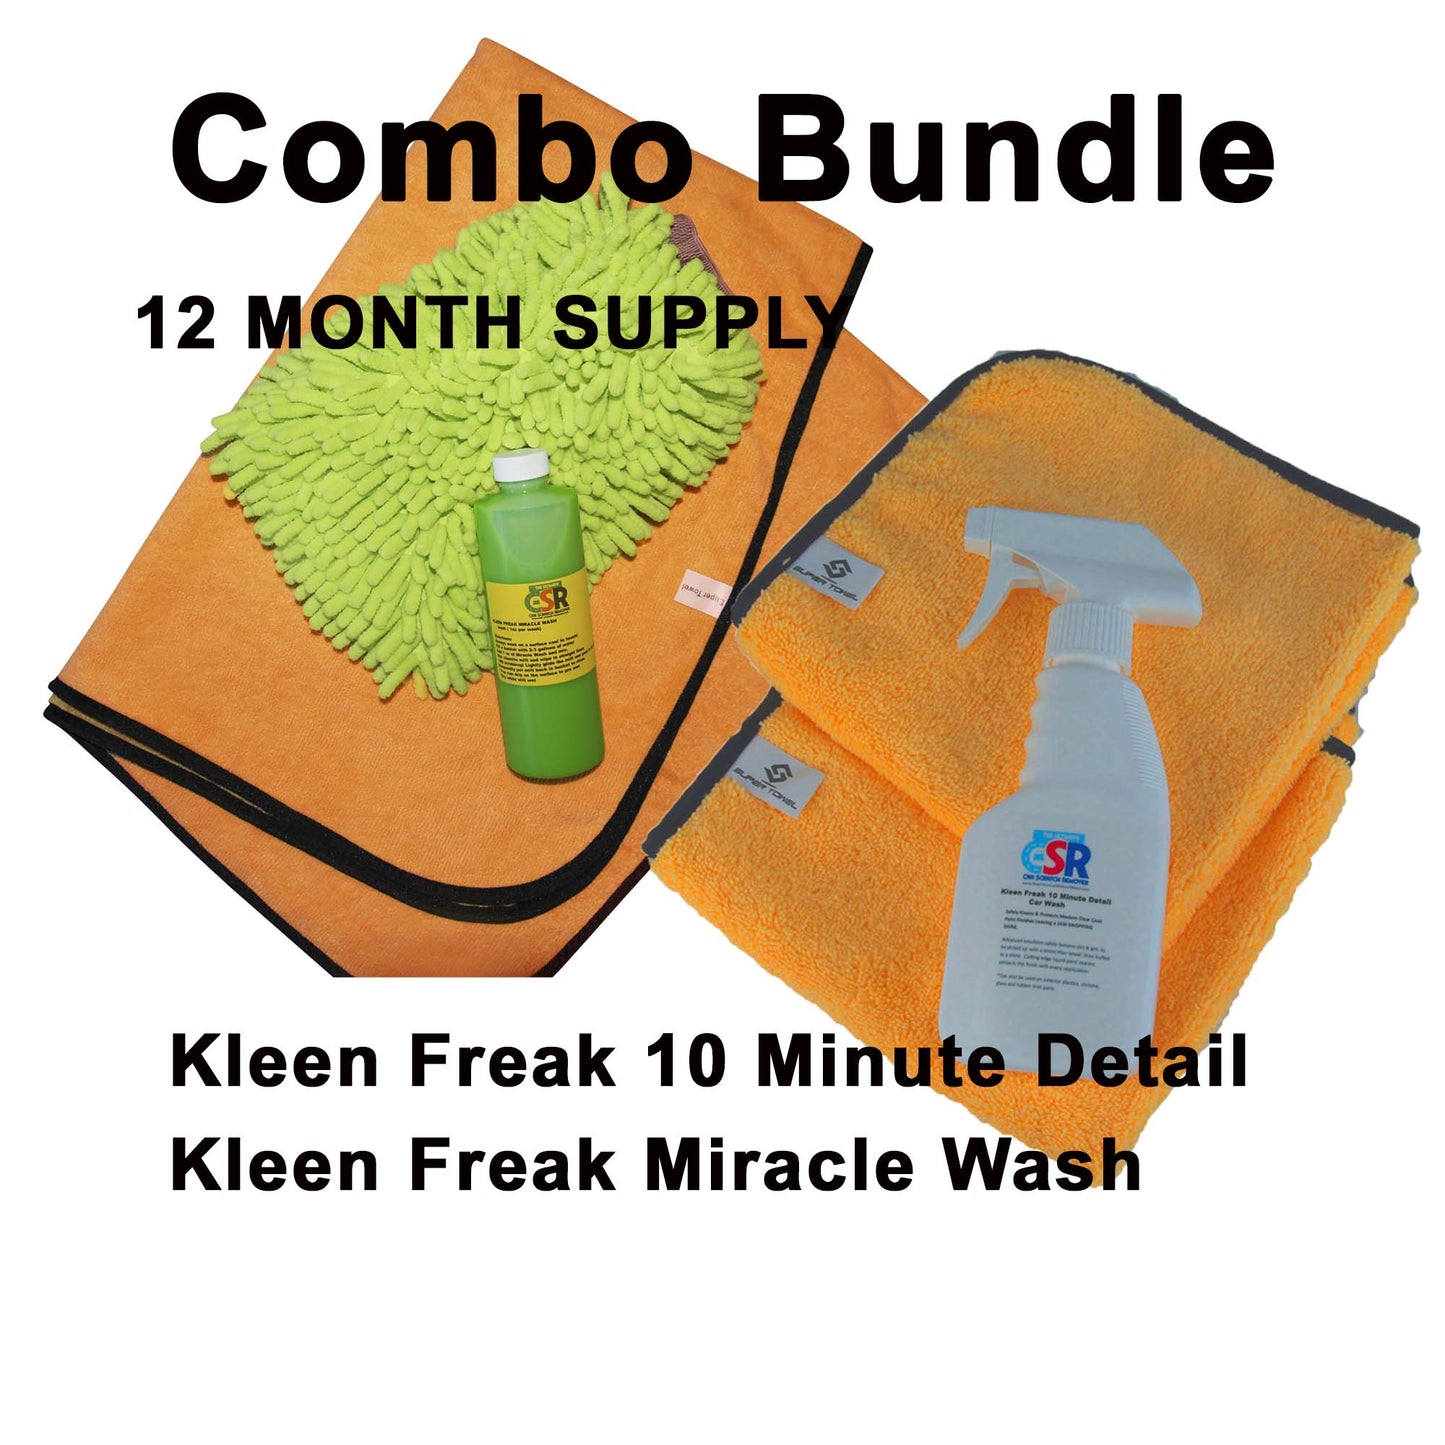 Kleen Freak Combo Bundle 12 month supply